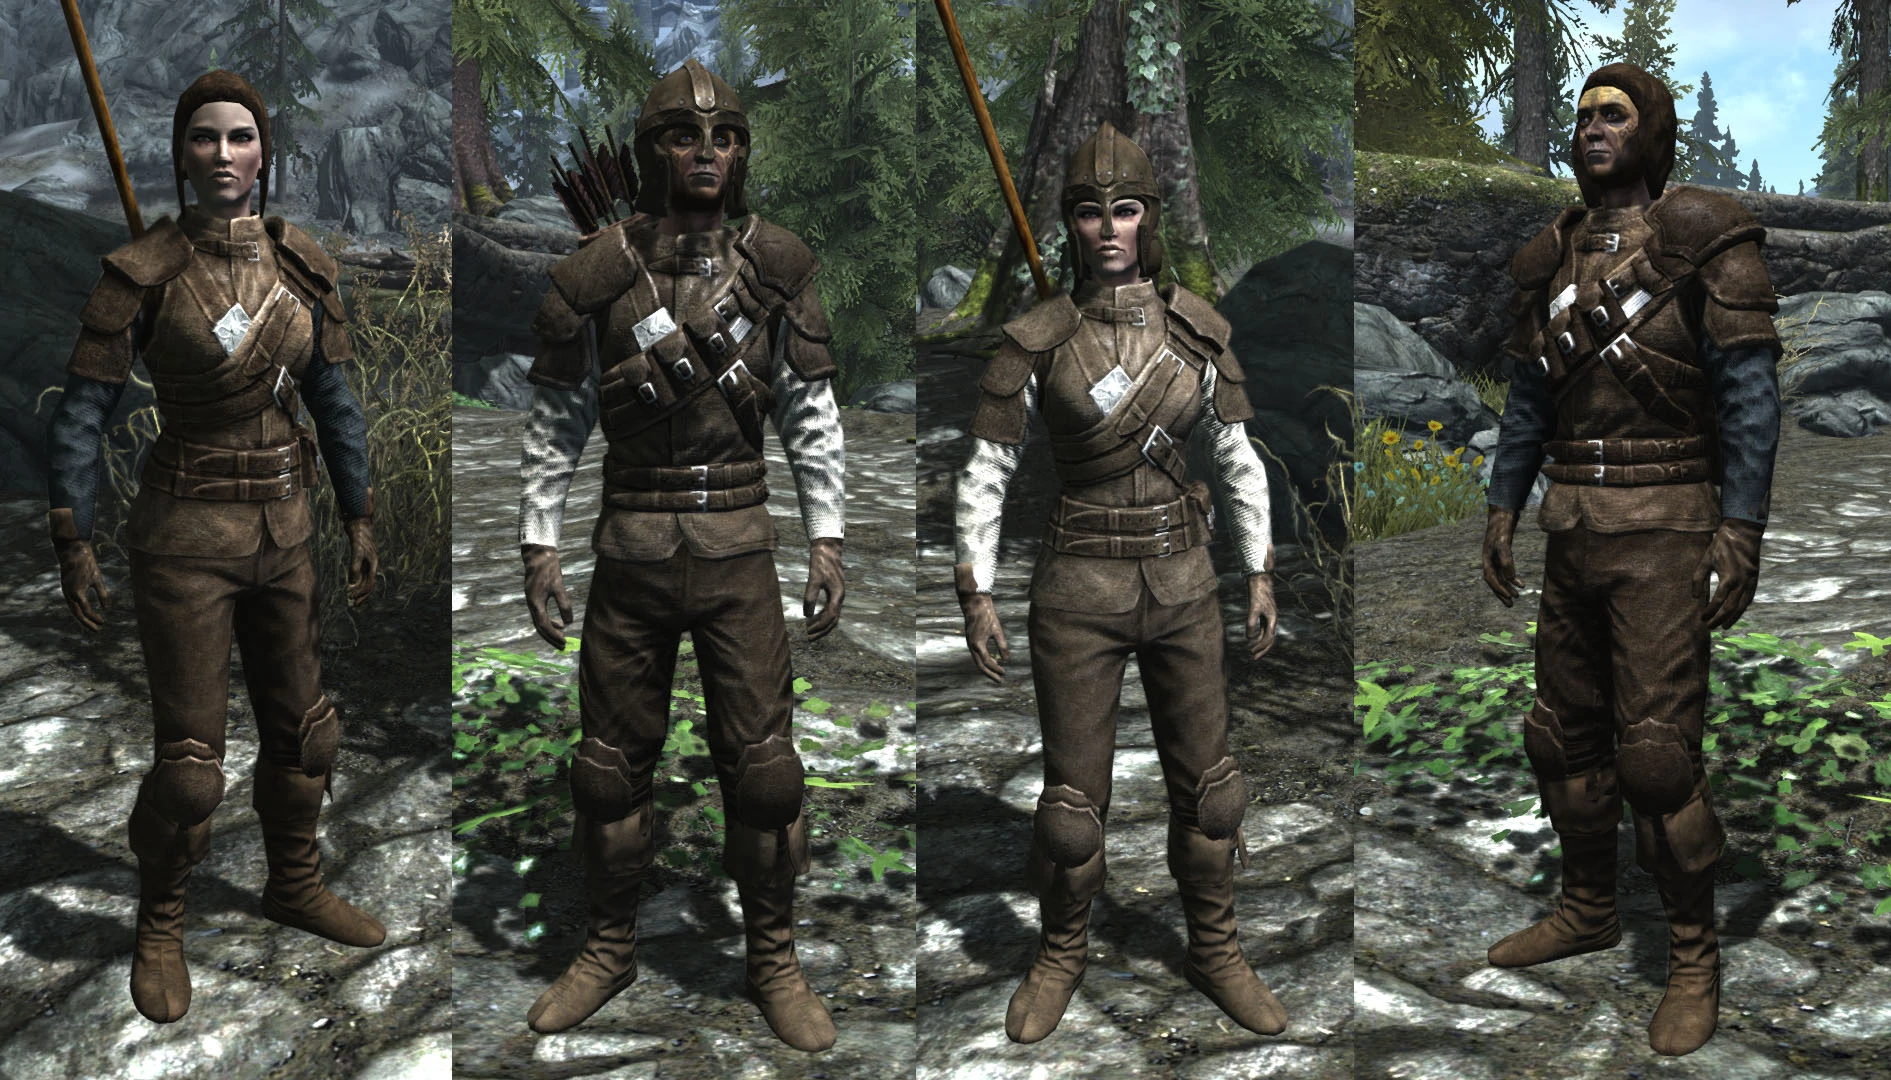 Leather adventurer armor